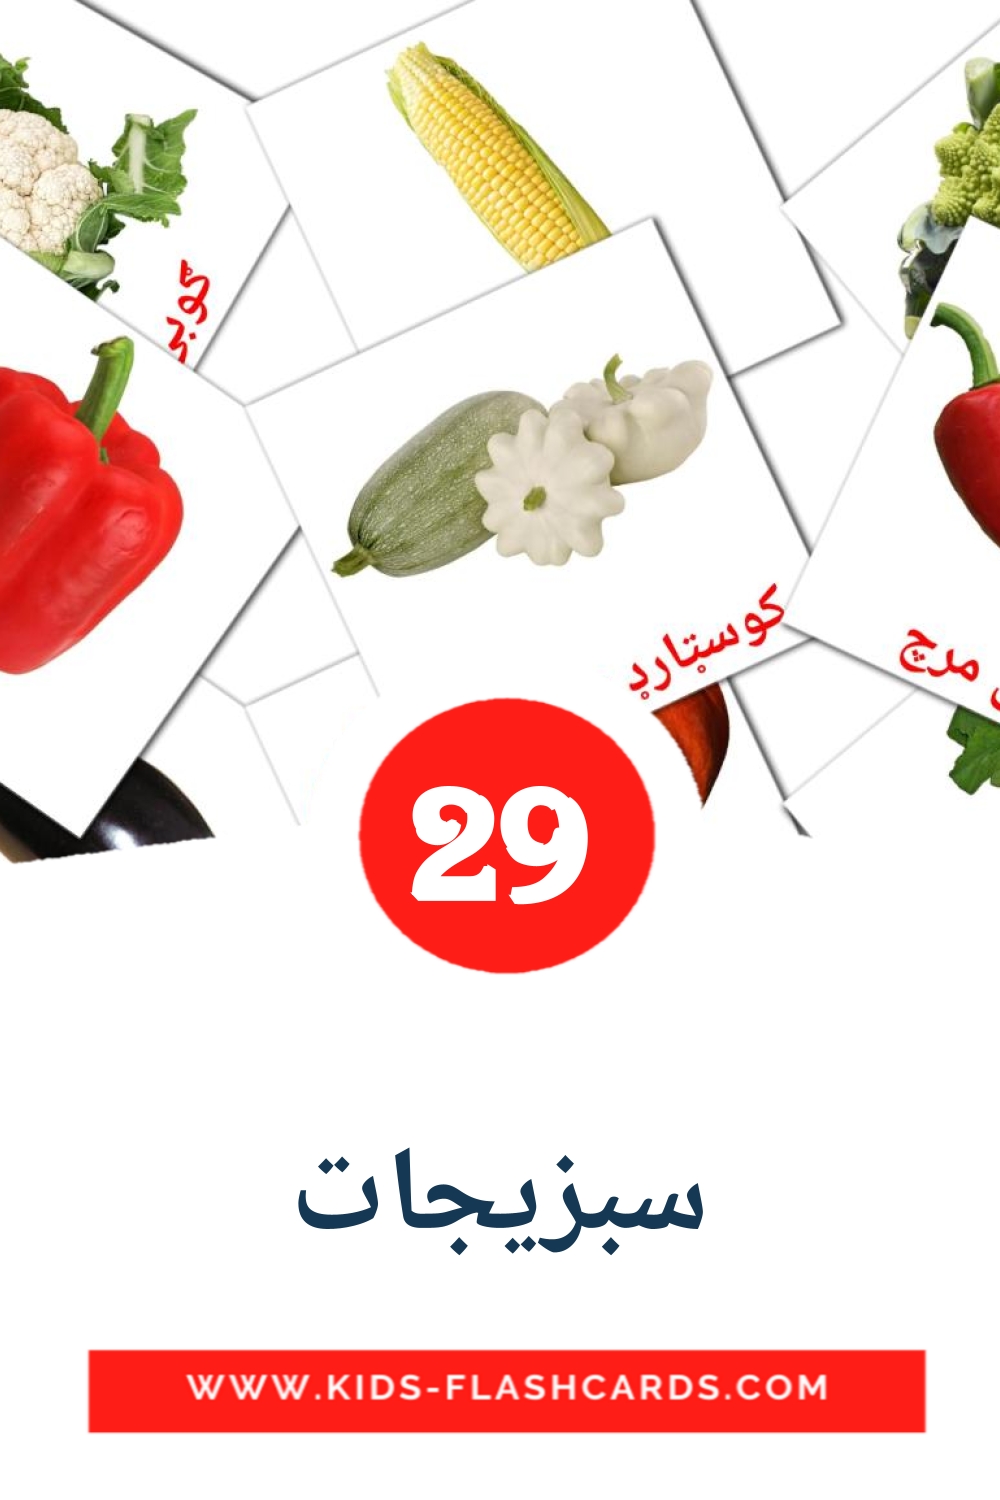 29 tarjetas didacticas de سبزیجات para el jardín de infancia en pashto